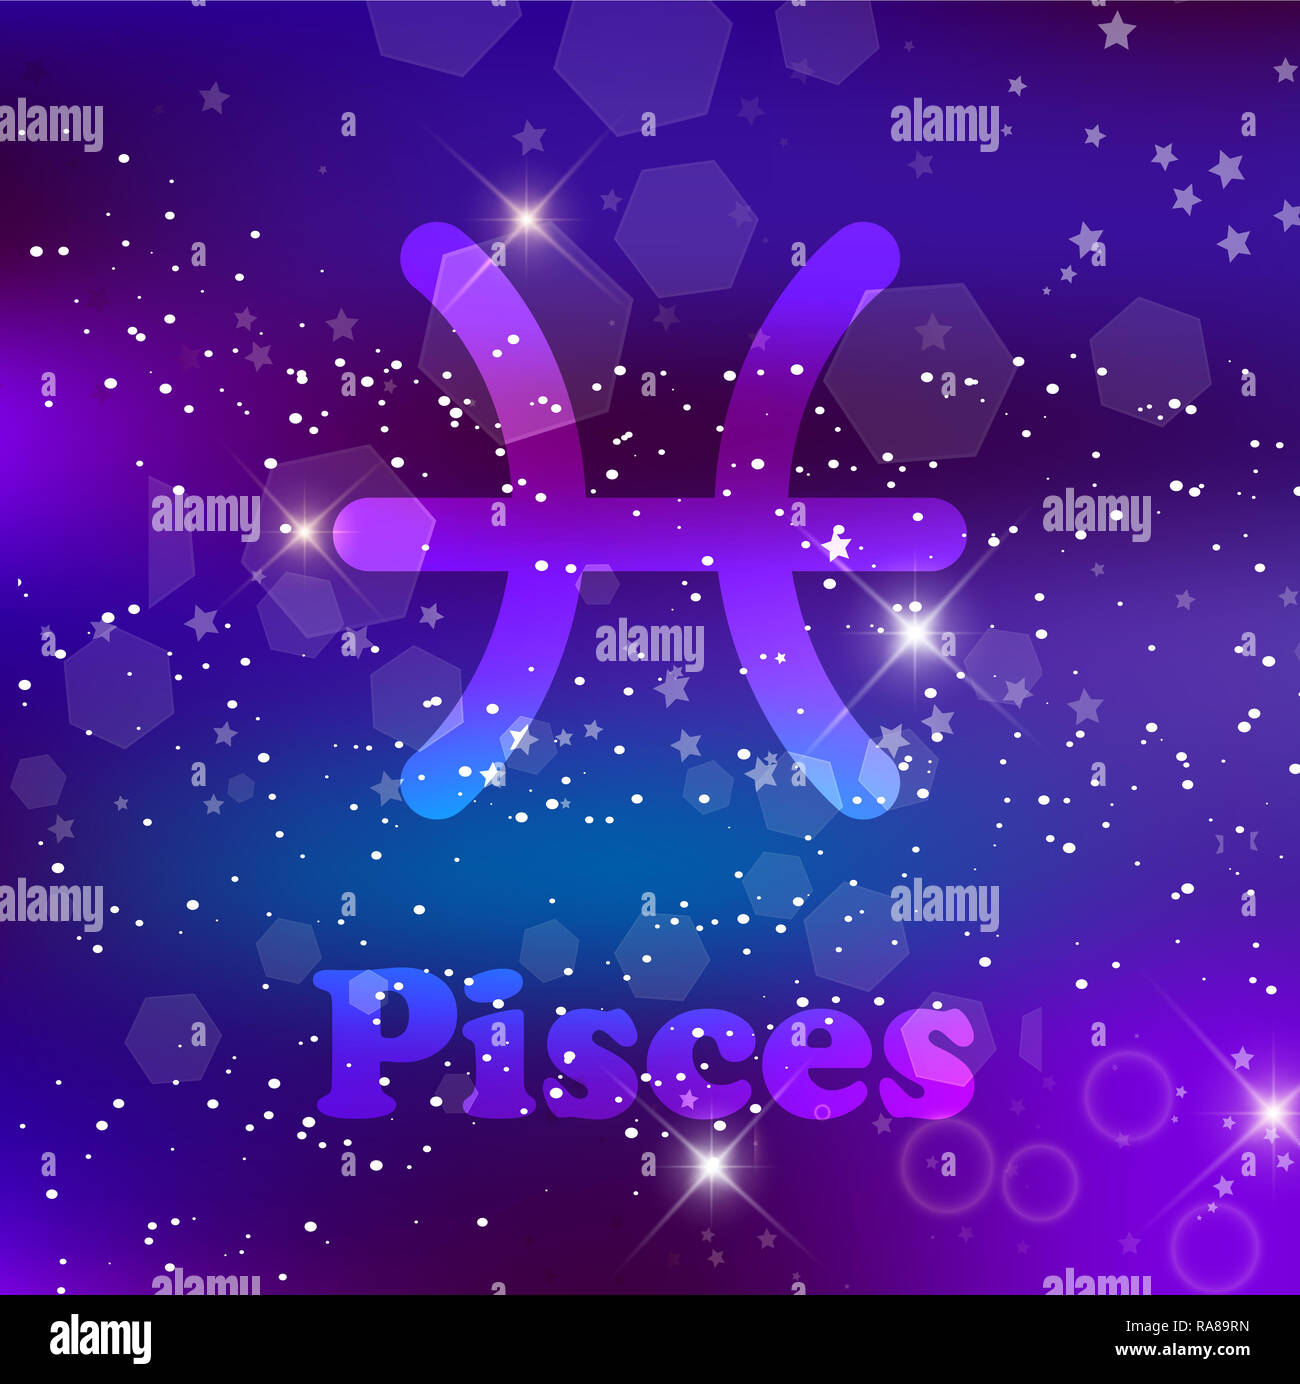 Pesci segno zodiacale e costellazione sul cosmica sfondo viola con stelle luccicanti e nebulosa. illustrazione, banner, poster, pesce card. Spazio, come Foto Stock